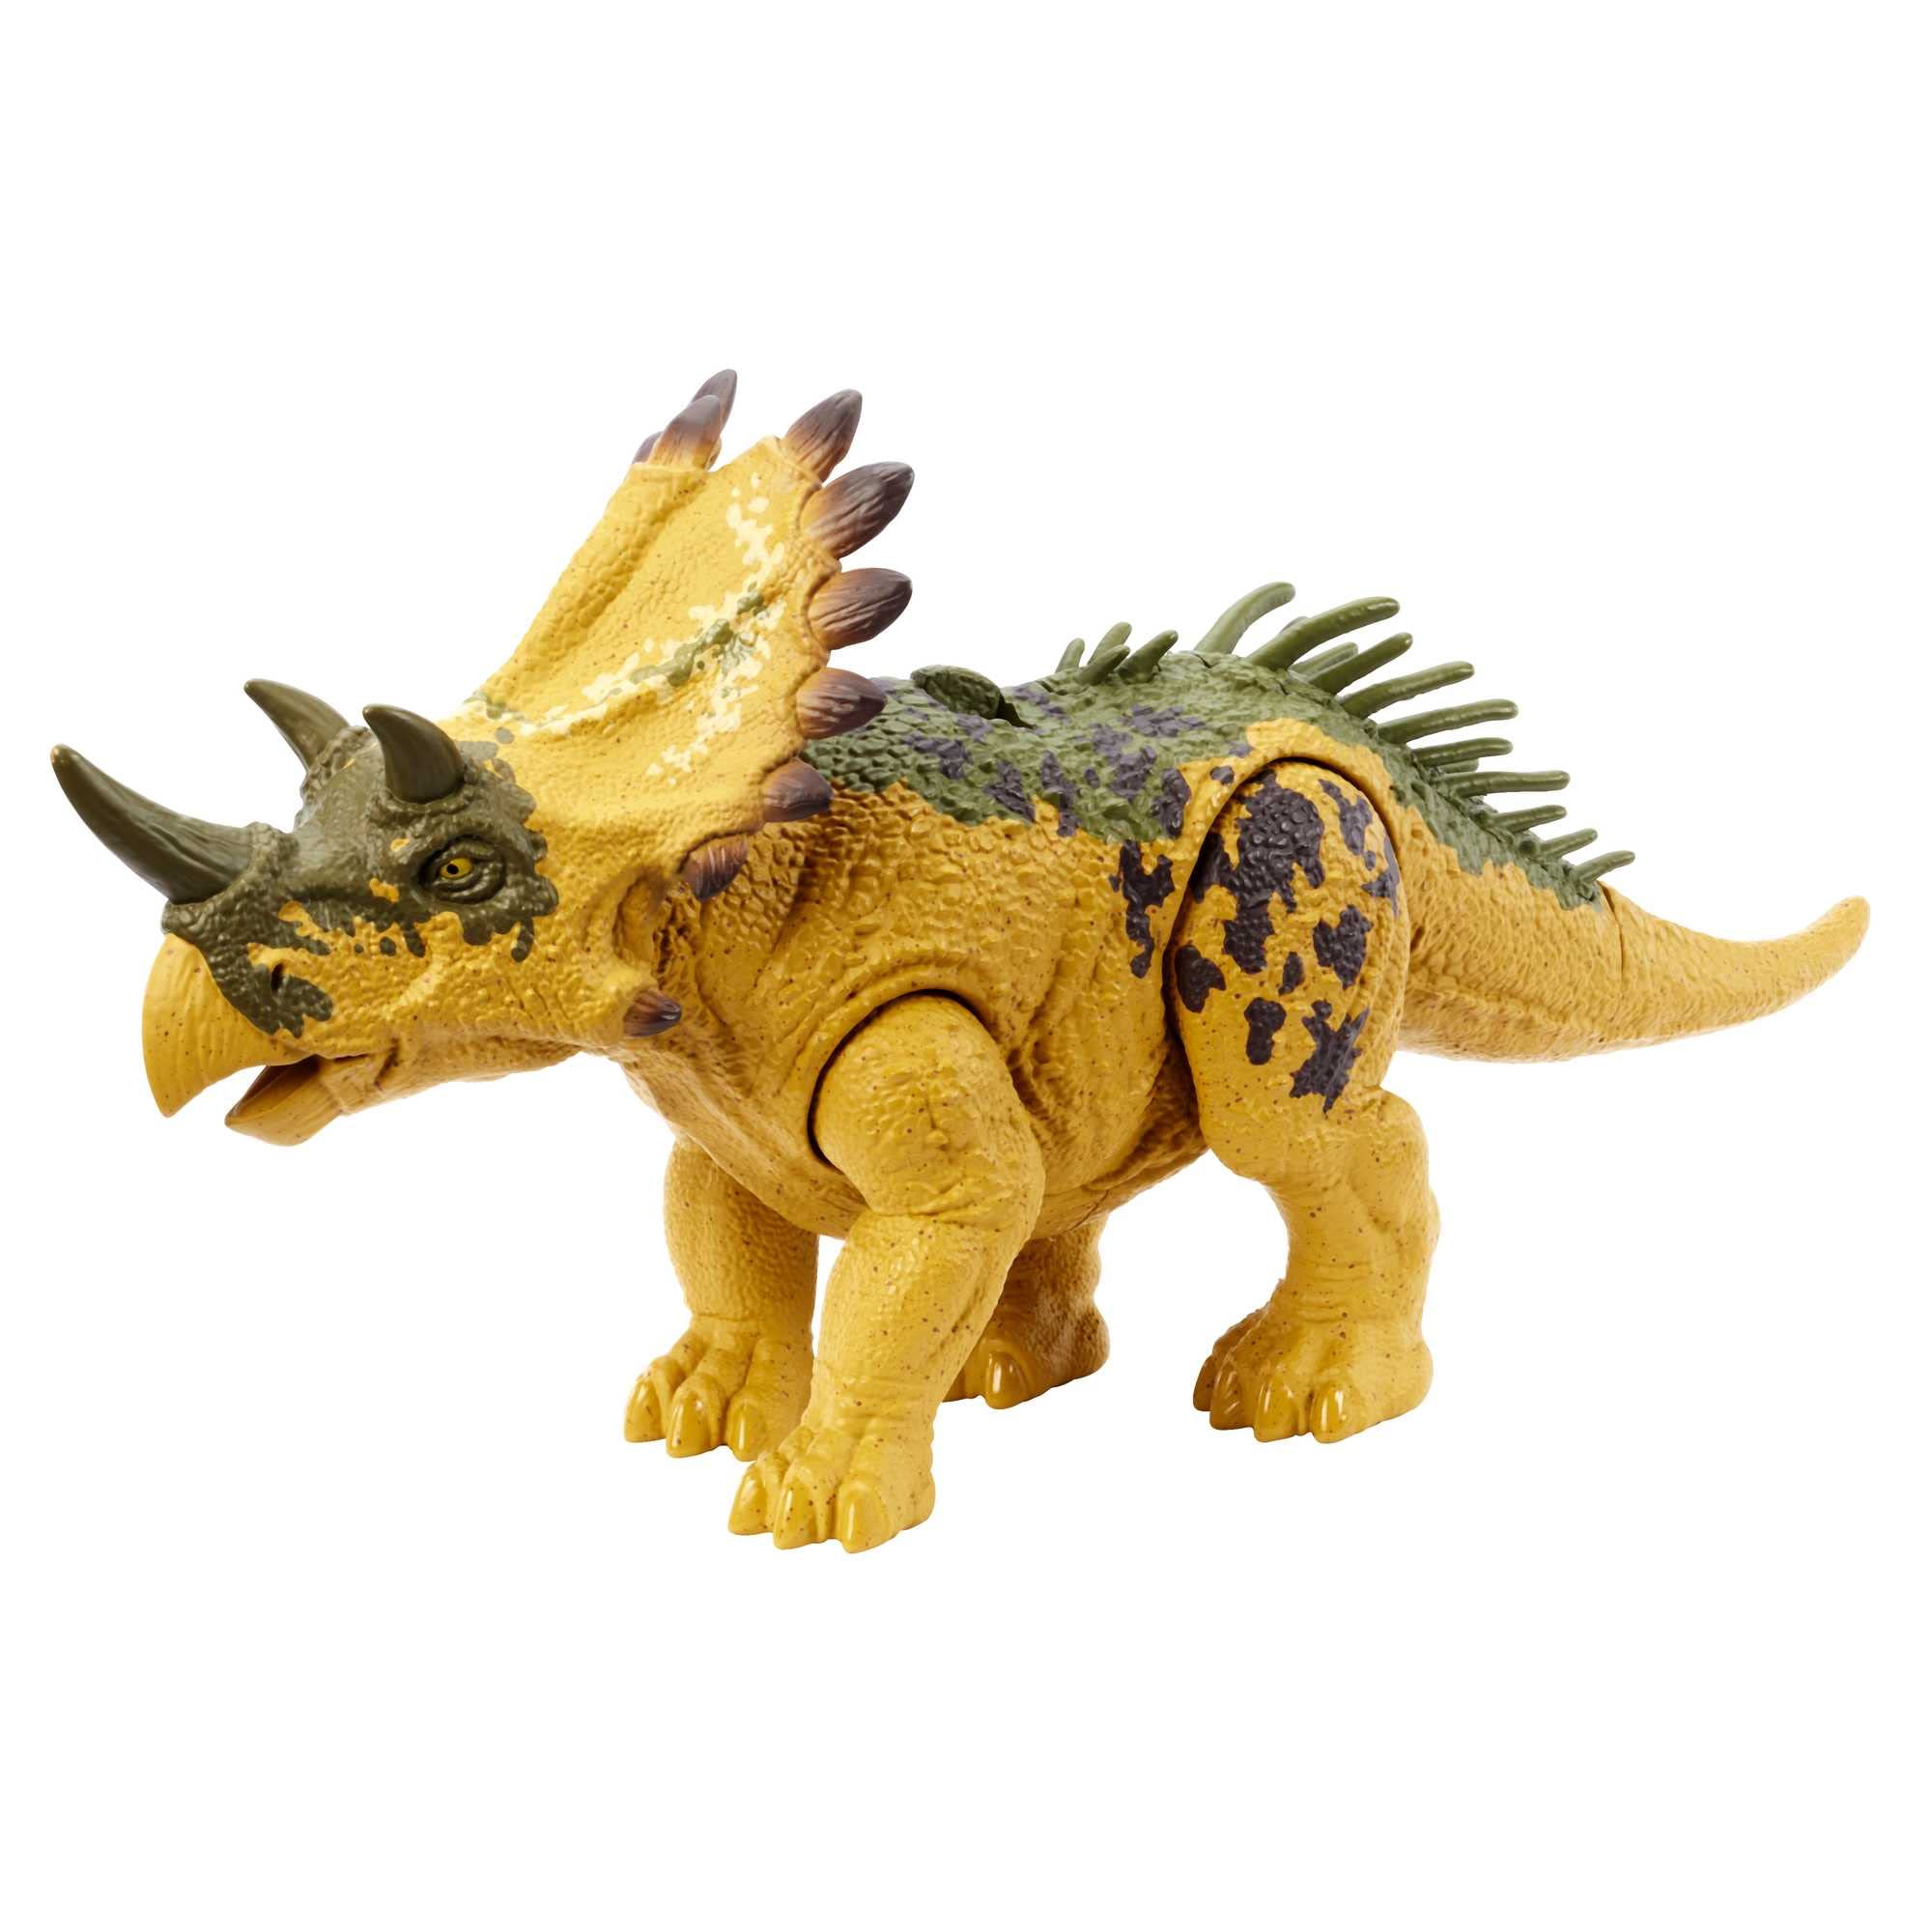 Mattel Jurassic World Dinosaur Toy: Regaliceratops $8.60, Irritator $8.95, Orkoraptor $10 & More + Free Shipping w/ Prime or on $35+